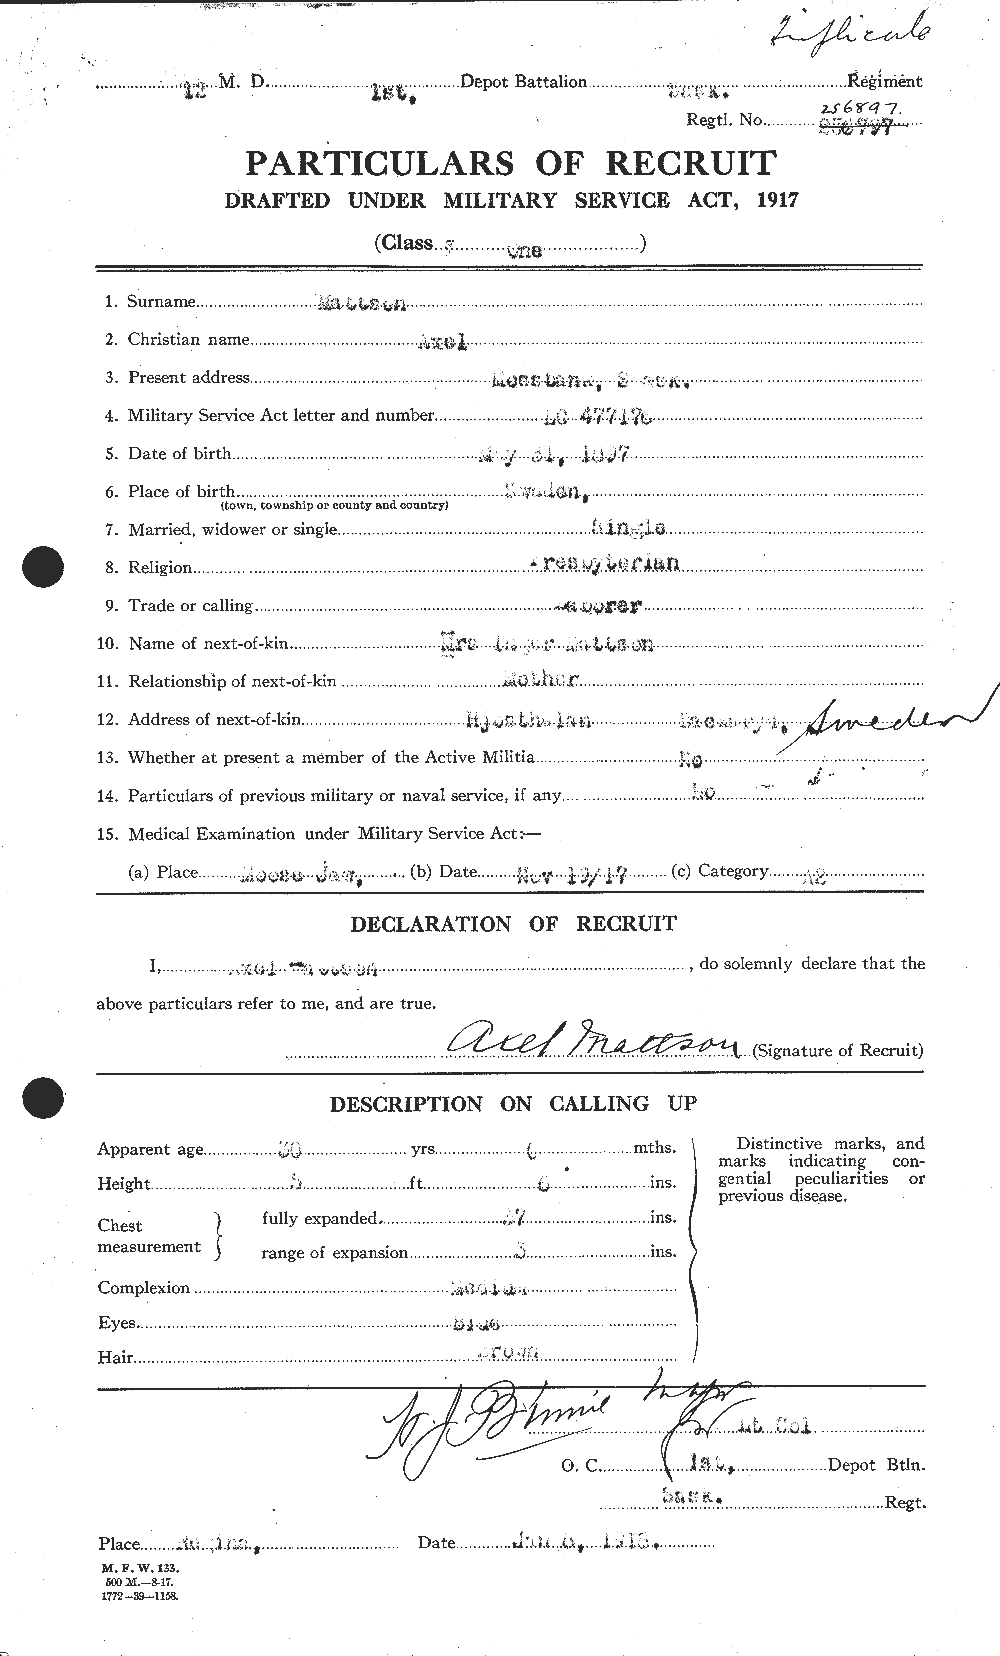 Dossiers du Personnel de la Première Guerre mondiale - CEC 484179a